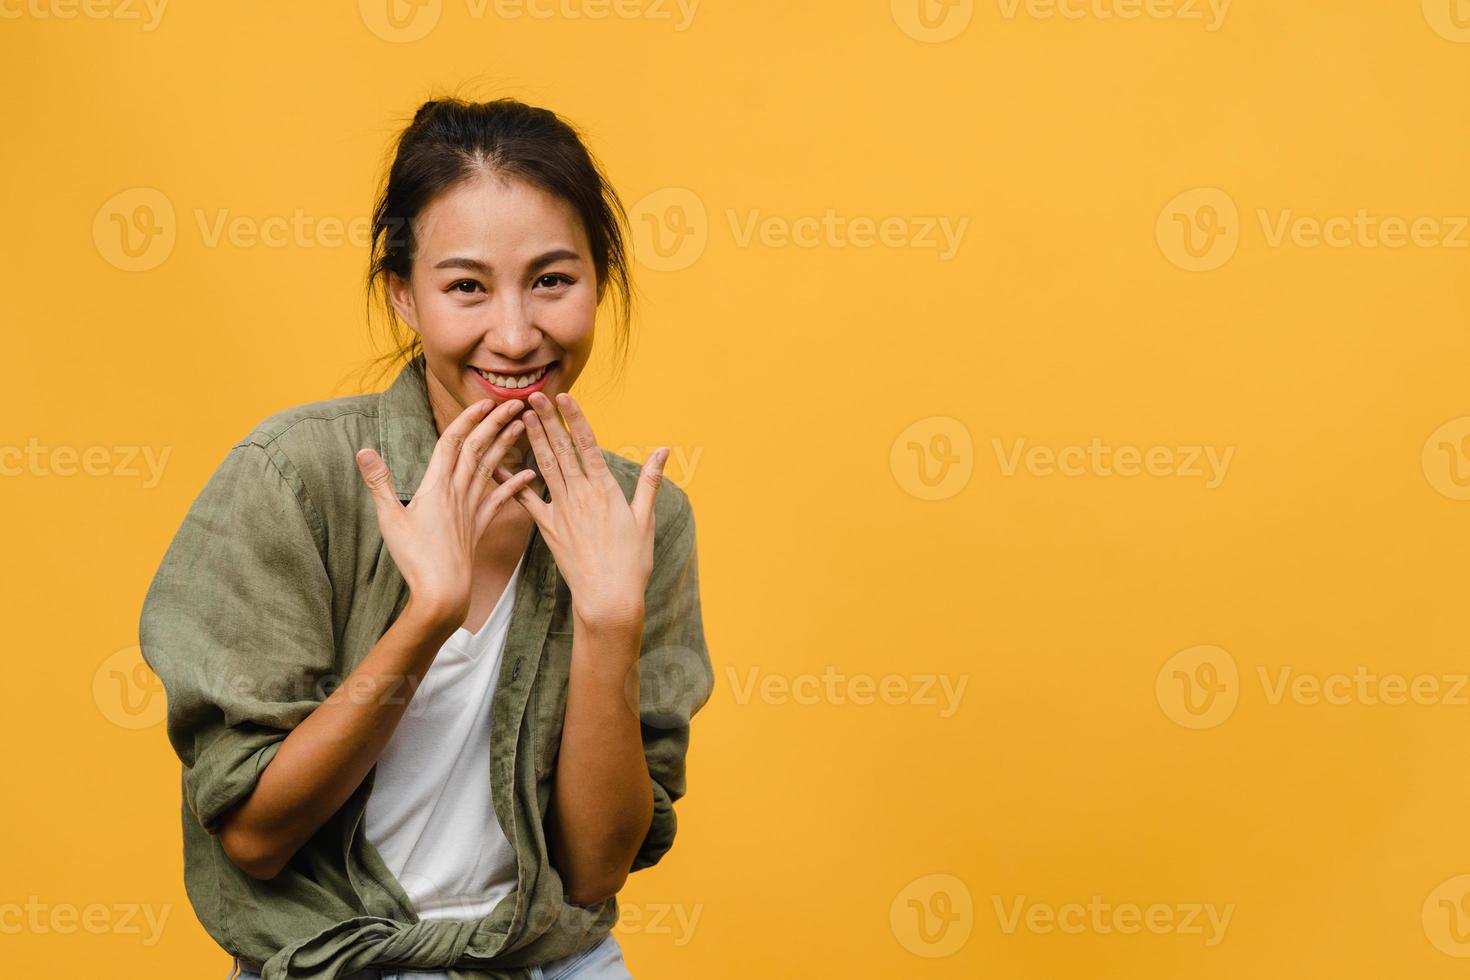 jonge azië dame met positieve uitdrukking, breed glimlachen, gekleed in casual kleding en camera kijken over gele achtergrond. gelukkige schattige blije vrouw verheugt zich over succes. gezichtsuitdrukking concept. foto